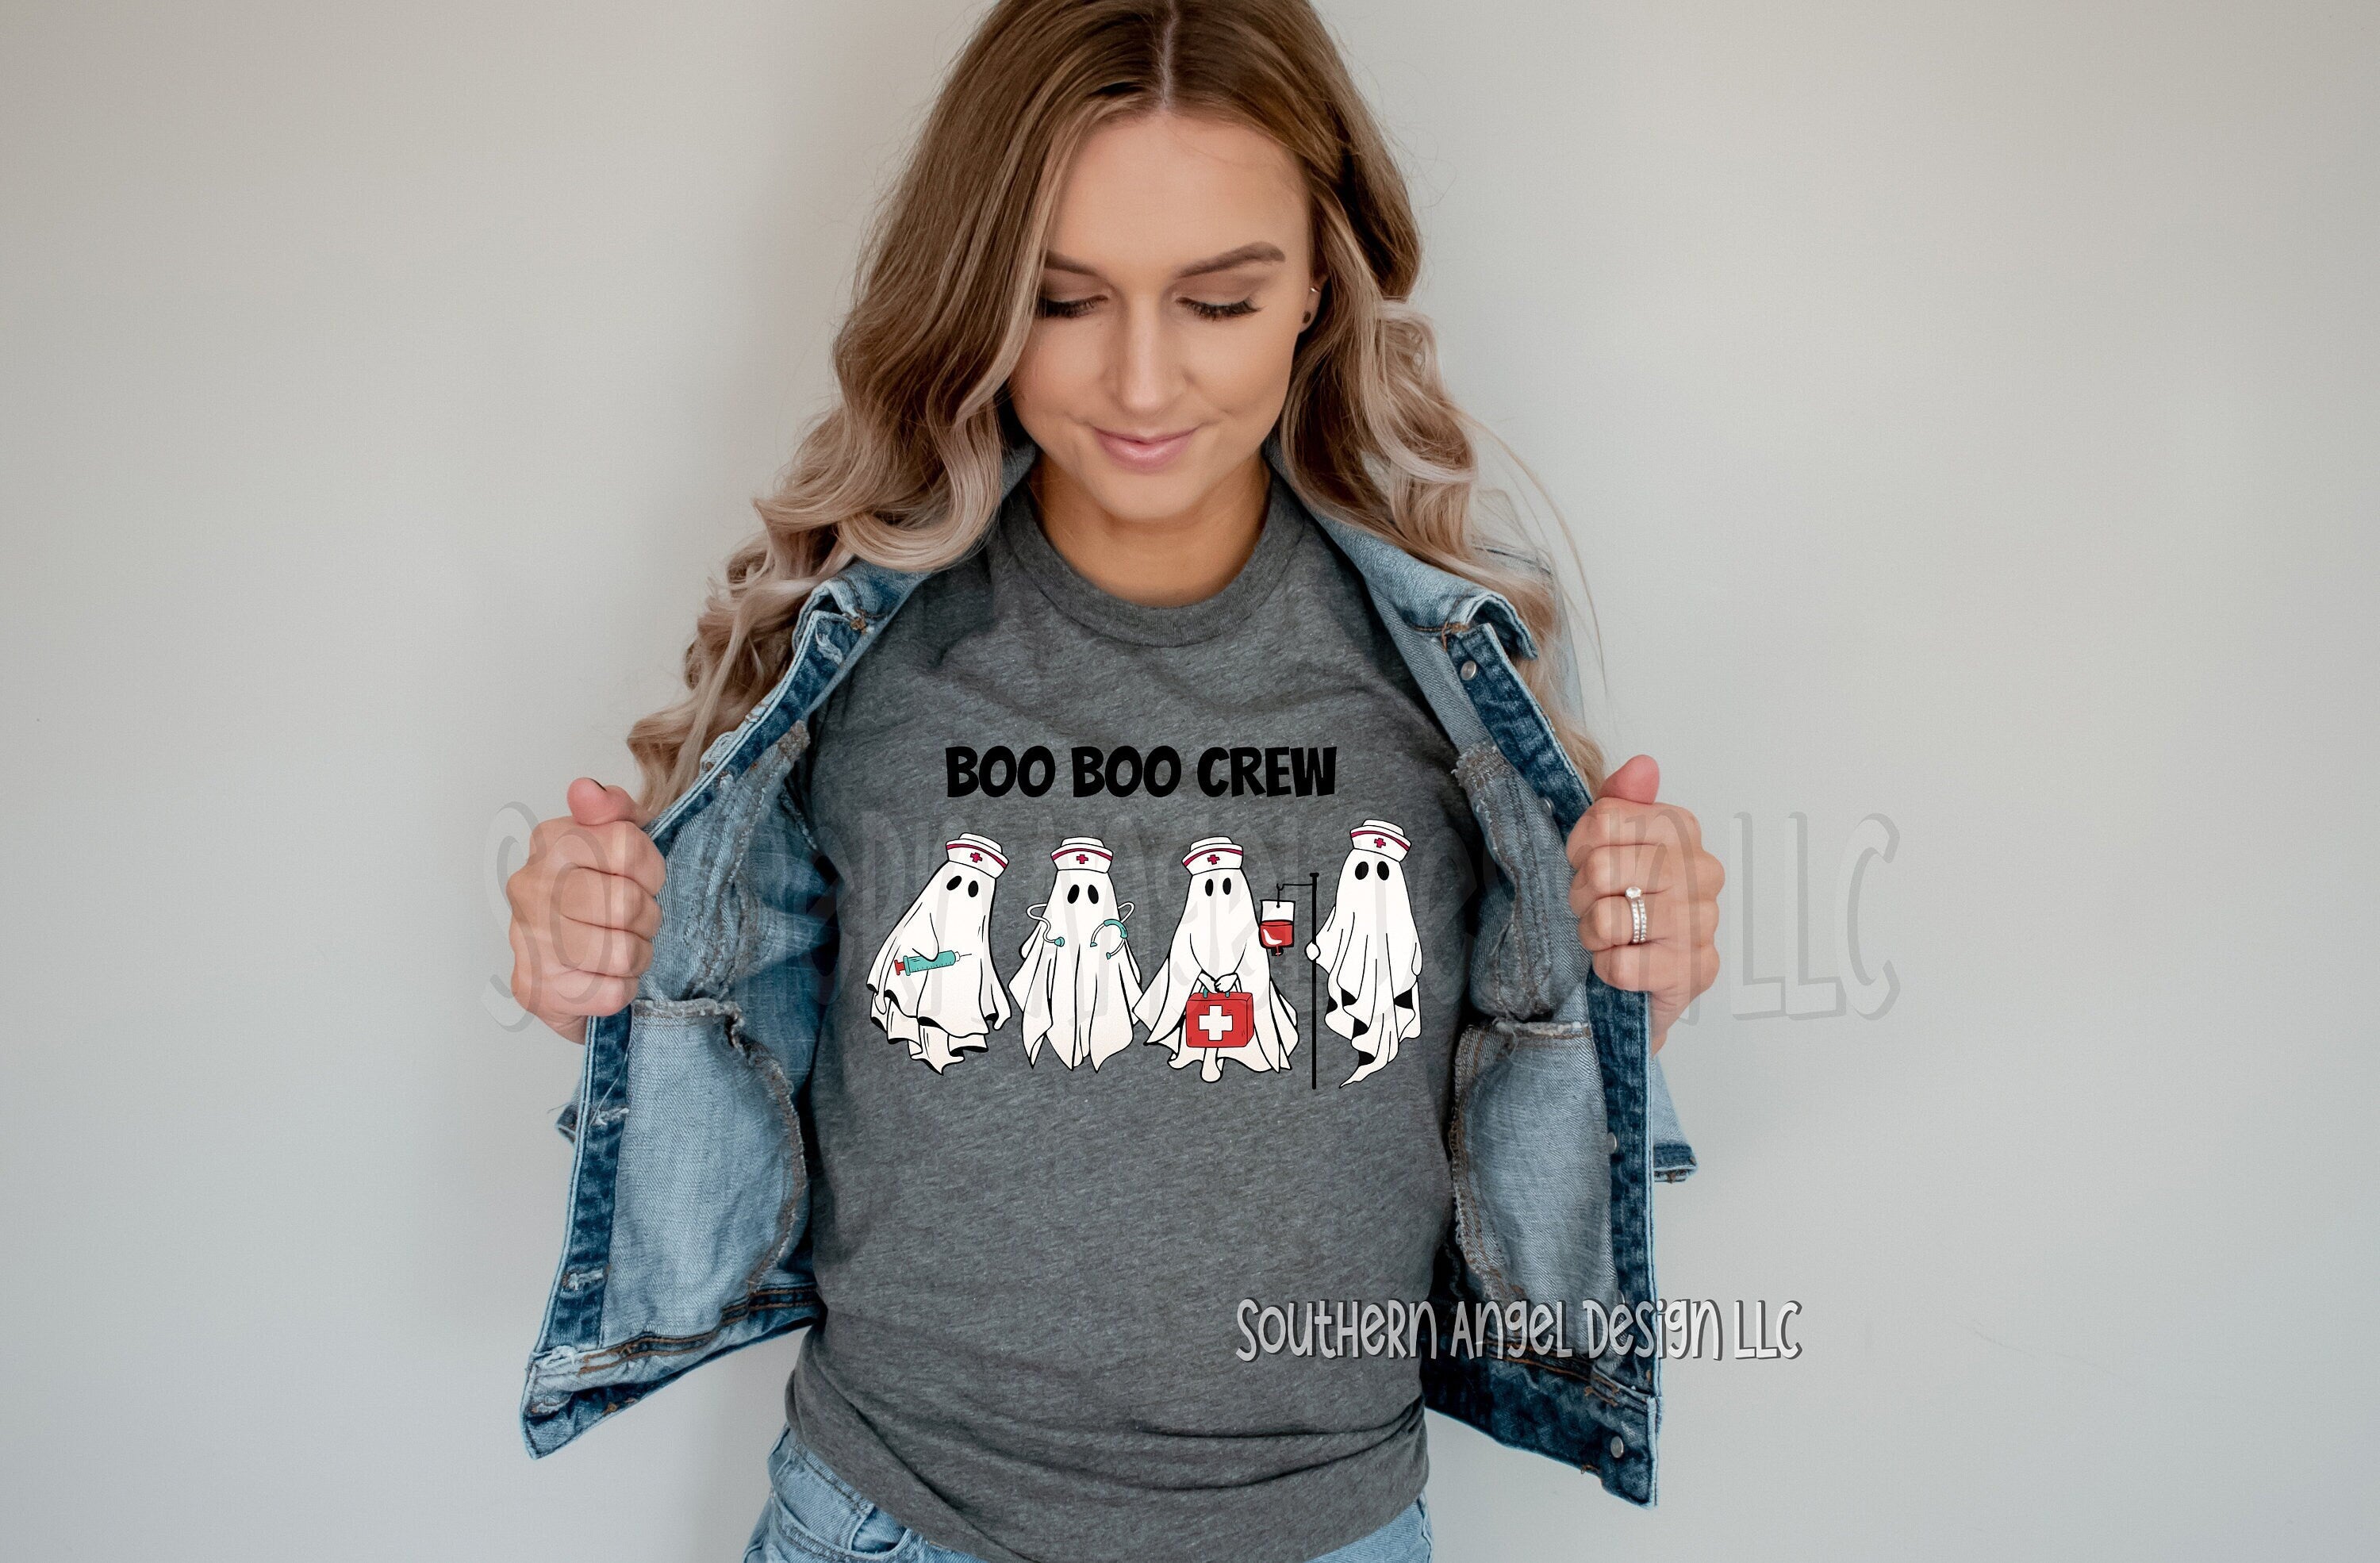 Boo Boo crew t-shirt